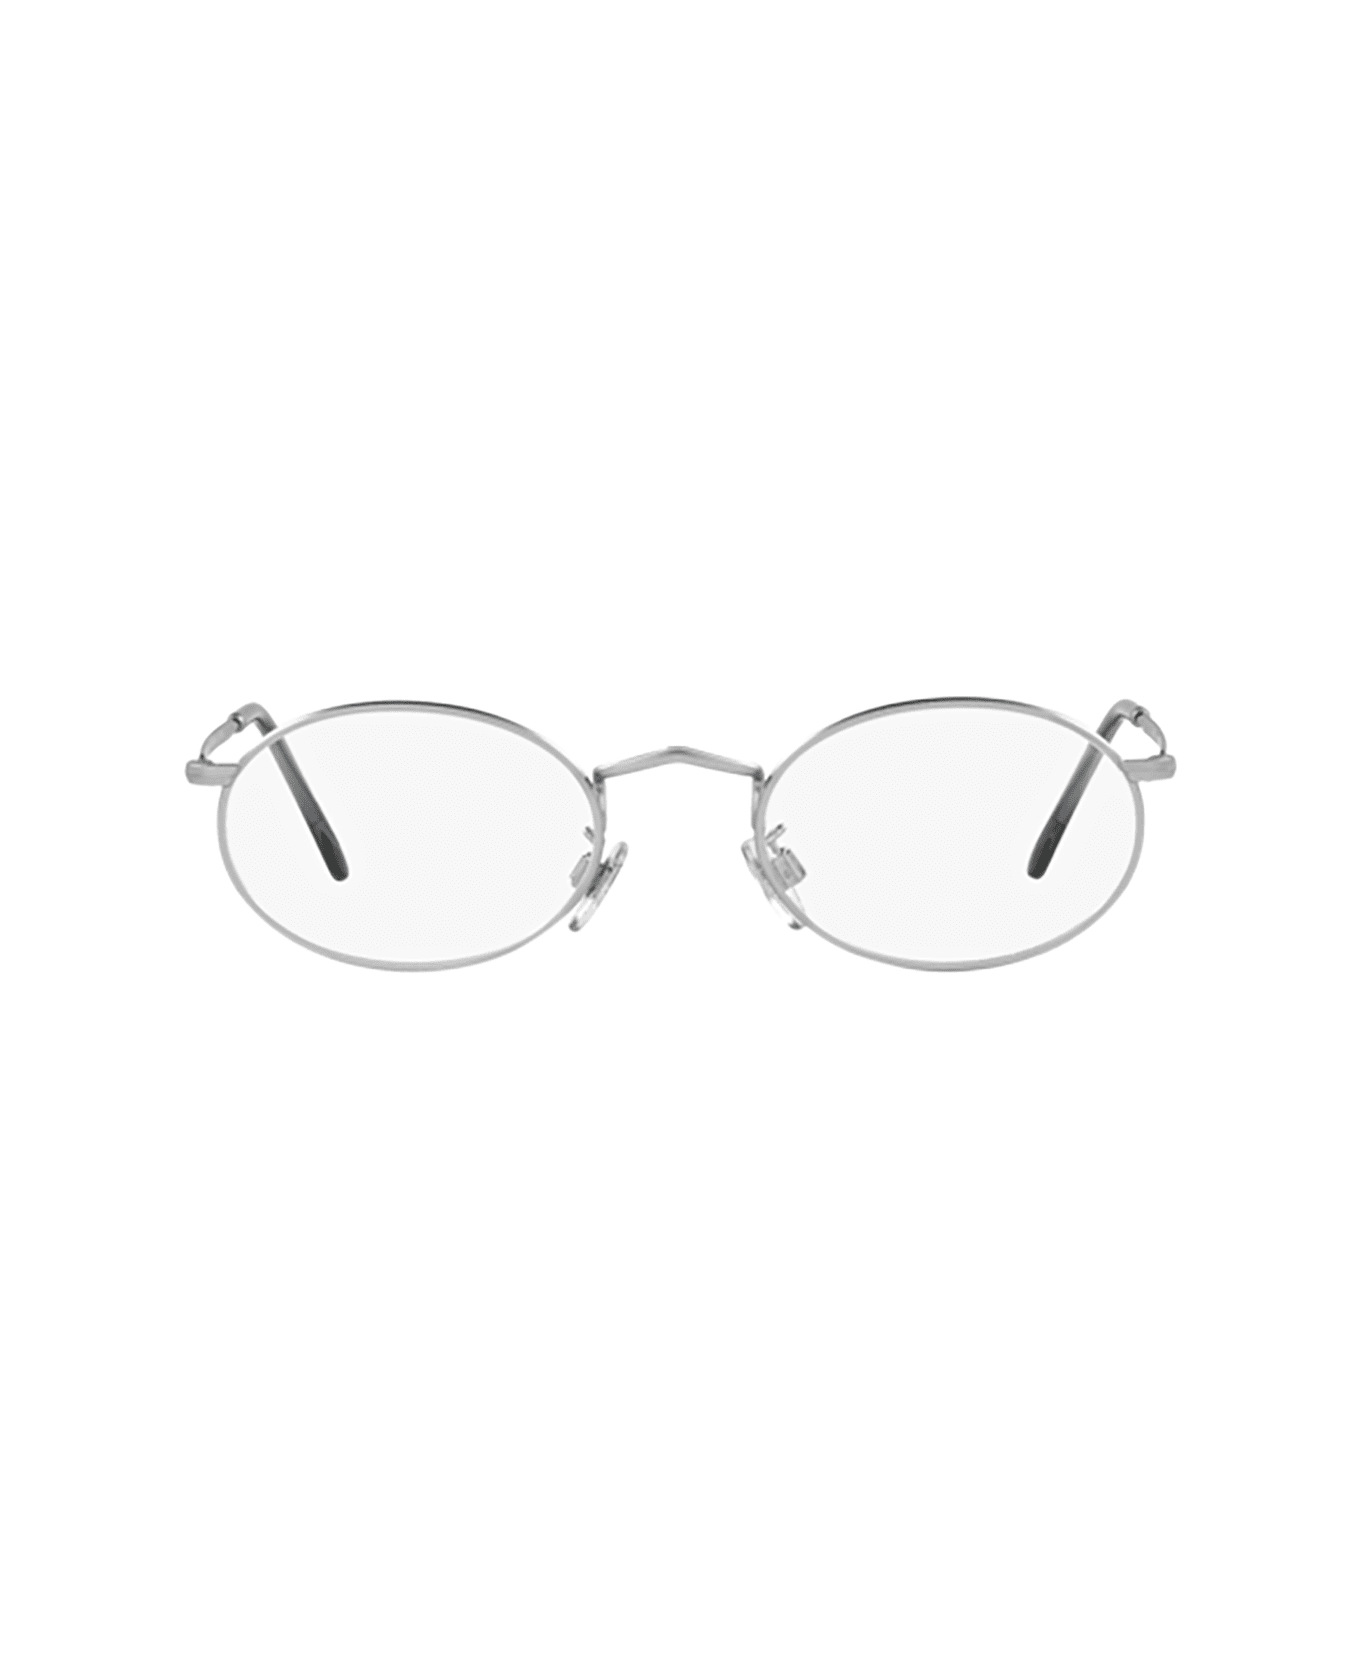 Giorgio Armani Ar 131vm Matte Silver Glasses - Matte Silver アイウェア